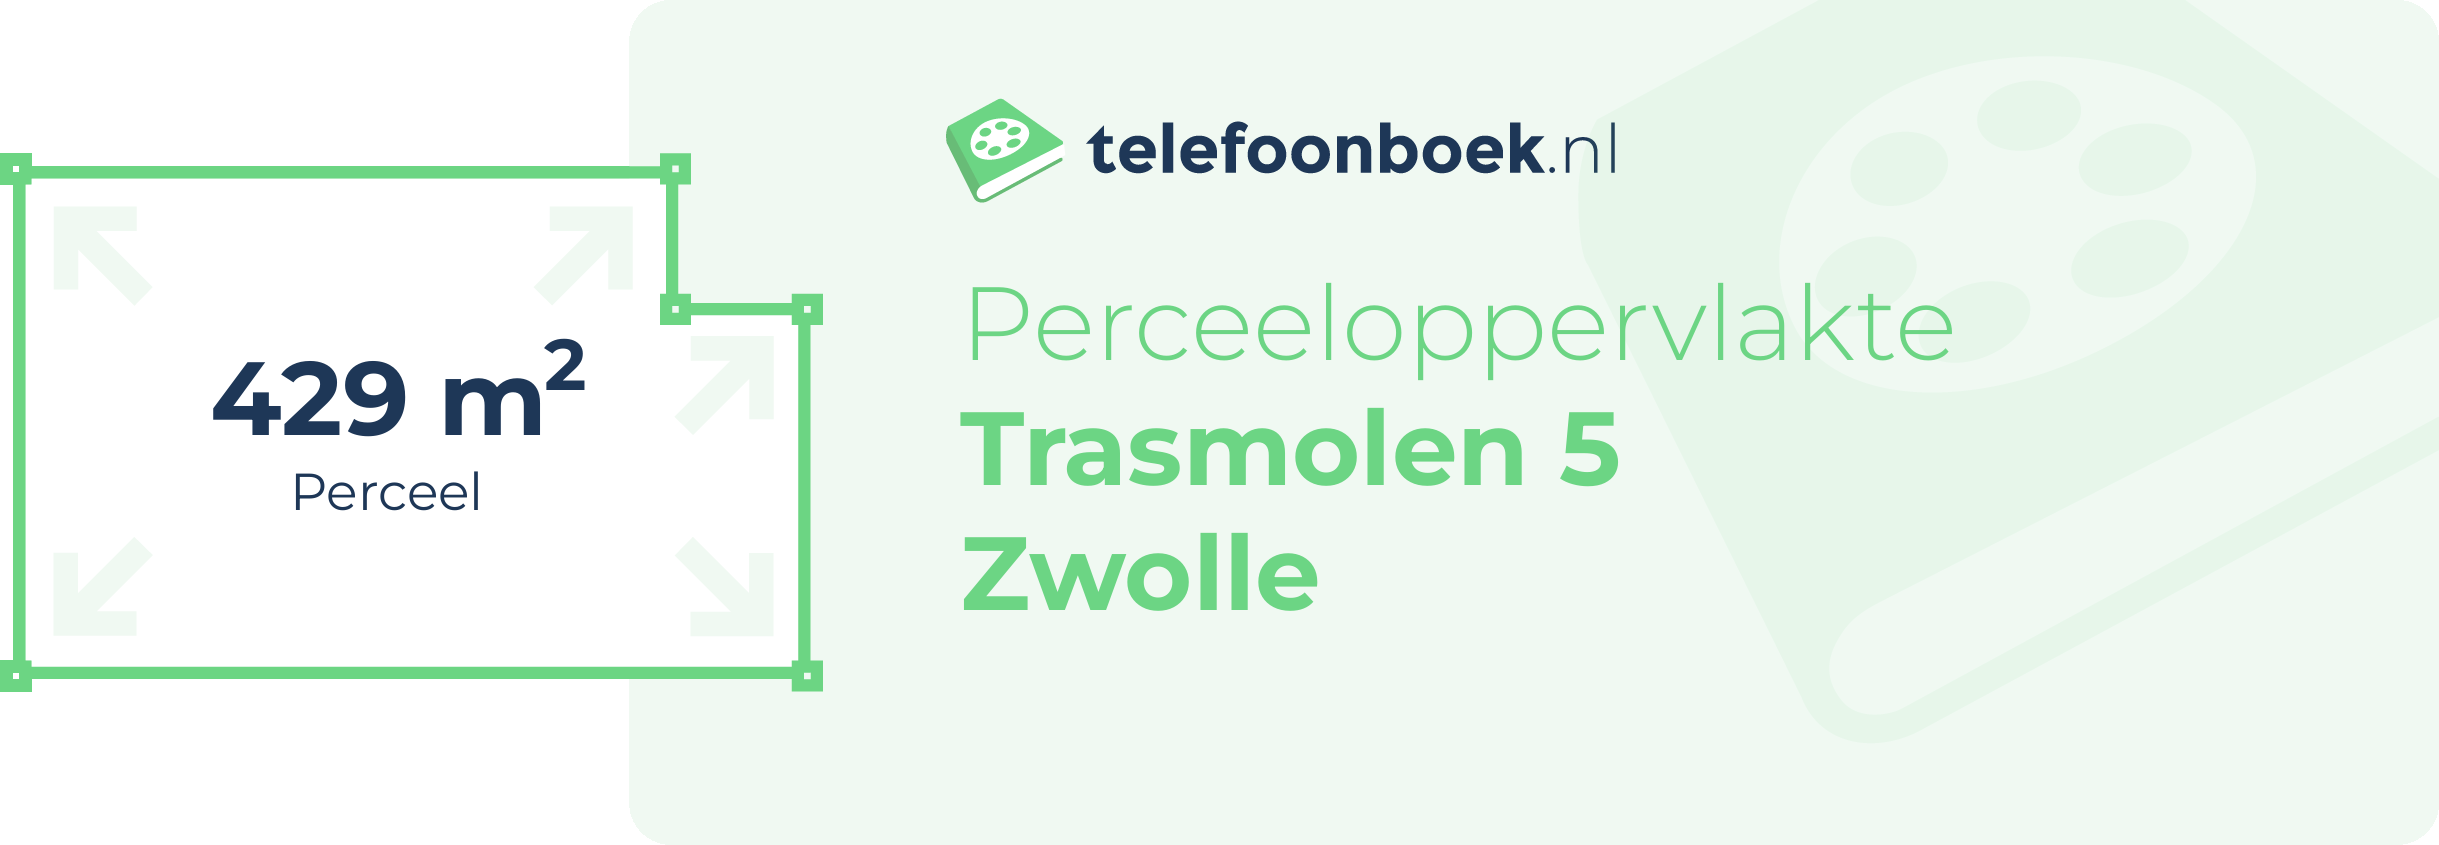 Perceeloppervlakte Trasmolen 5 Zwolle